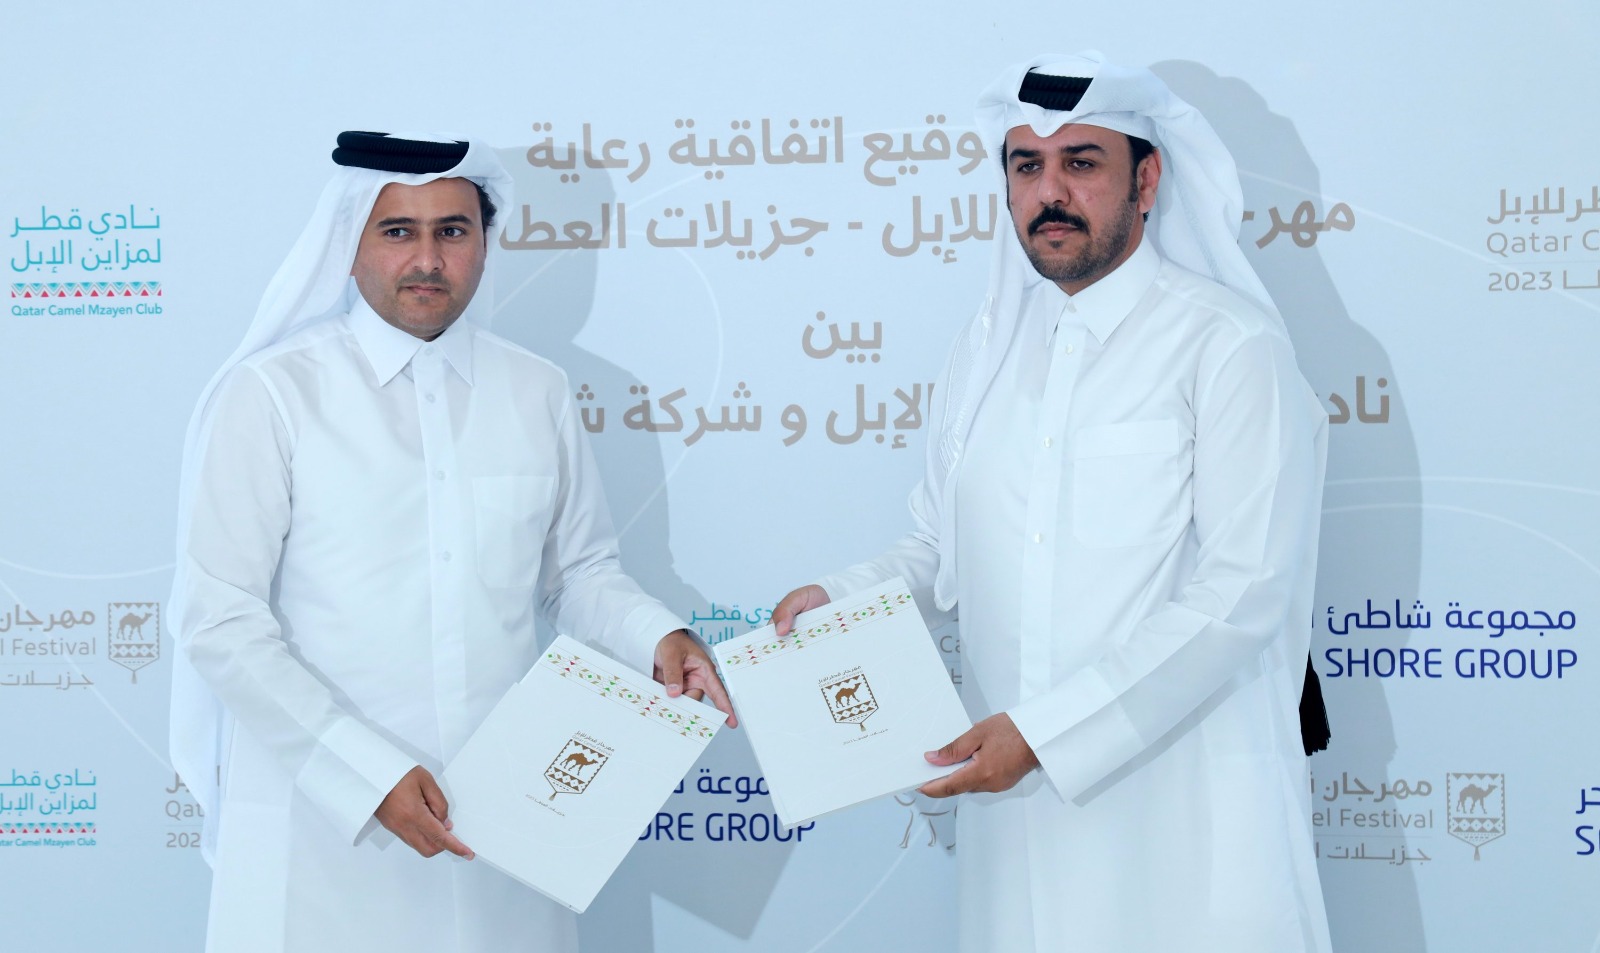 نادي قطر لمزاين الإبل يبرم اتفاقية رعاية مع مجموعة شاطيء البحر